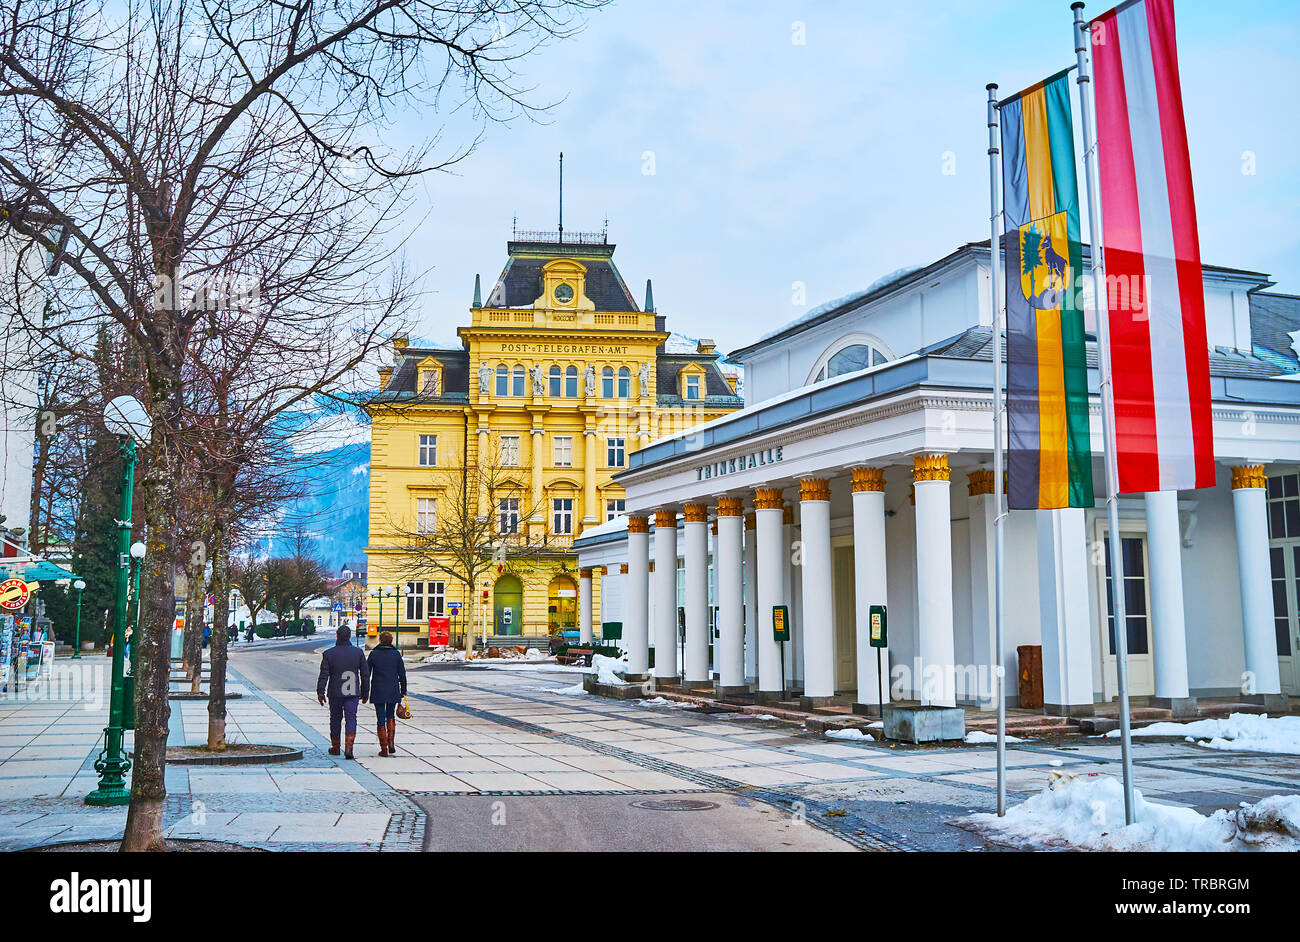 BAD ISCHL, Österreich - Februar 20, 2019: Die klassischen Gebäude der Trinkhalle und dem malerischen Gebäude der Post, in Sparkassenplatz, auf F Stockfoto